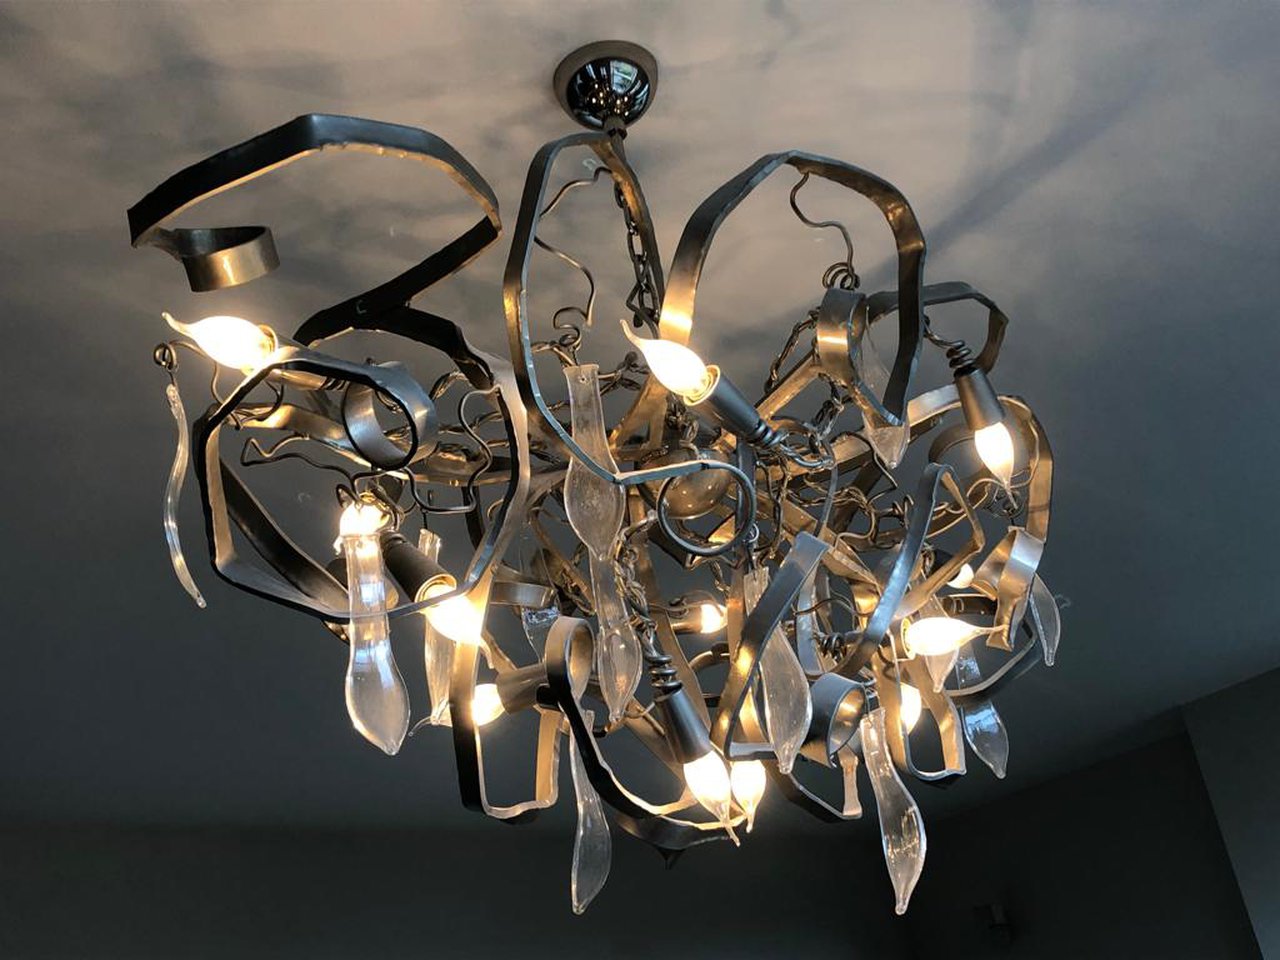 Brand Van Egmond Delphinium ceiling lamp image 1